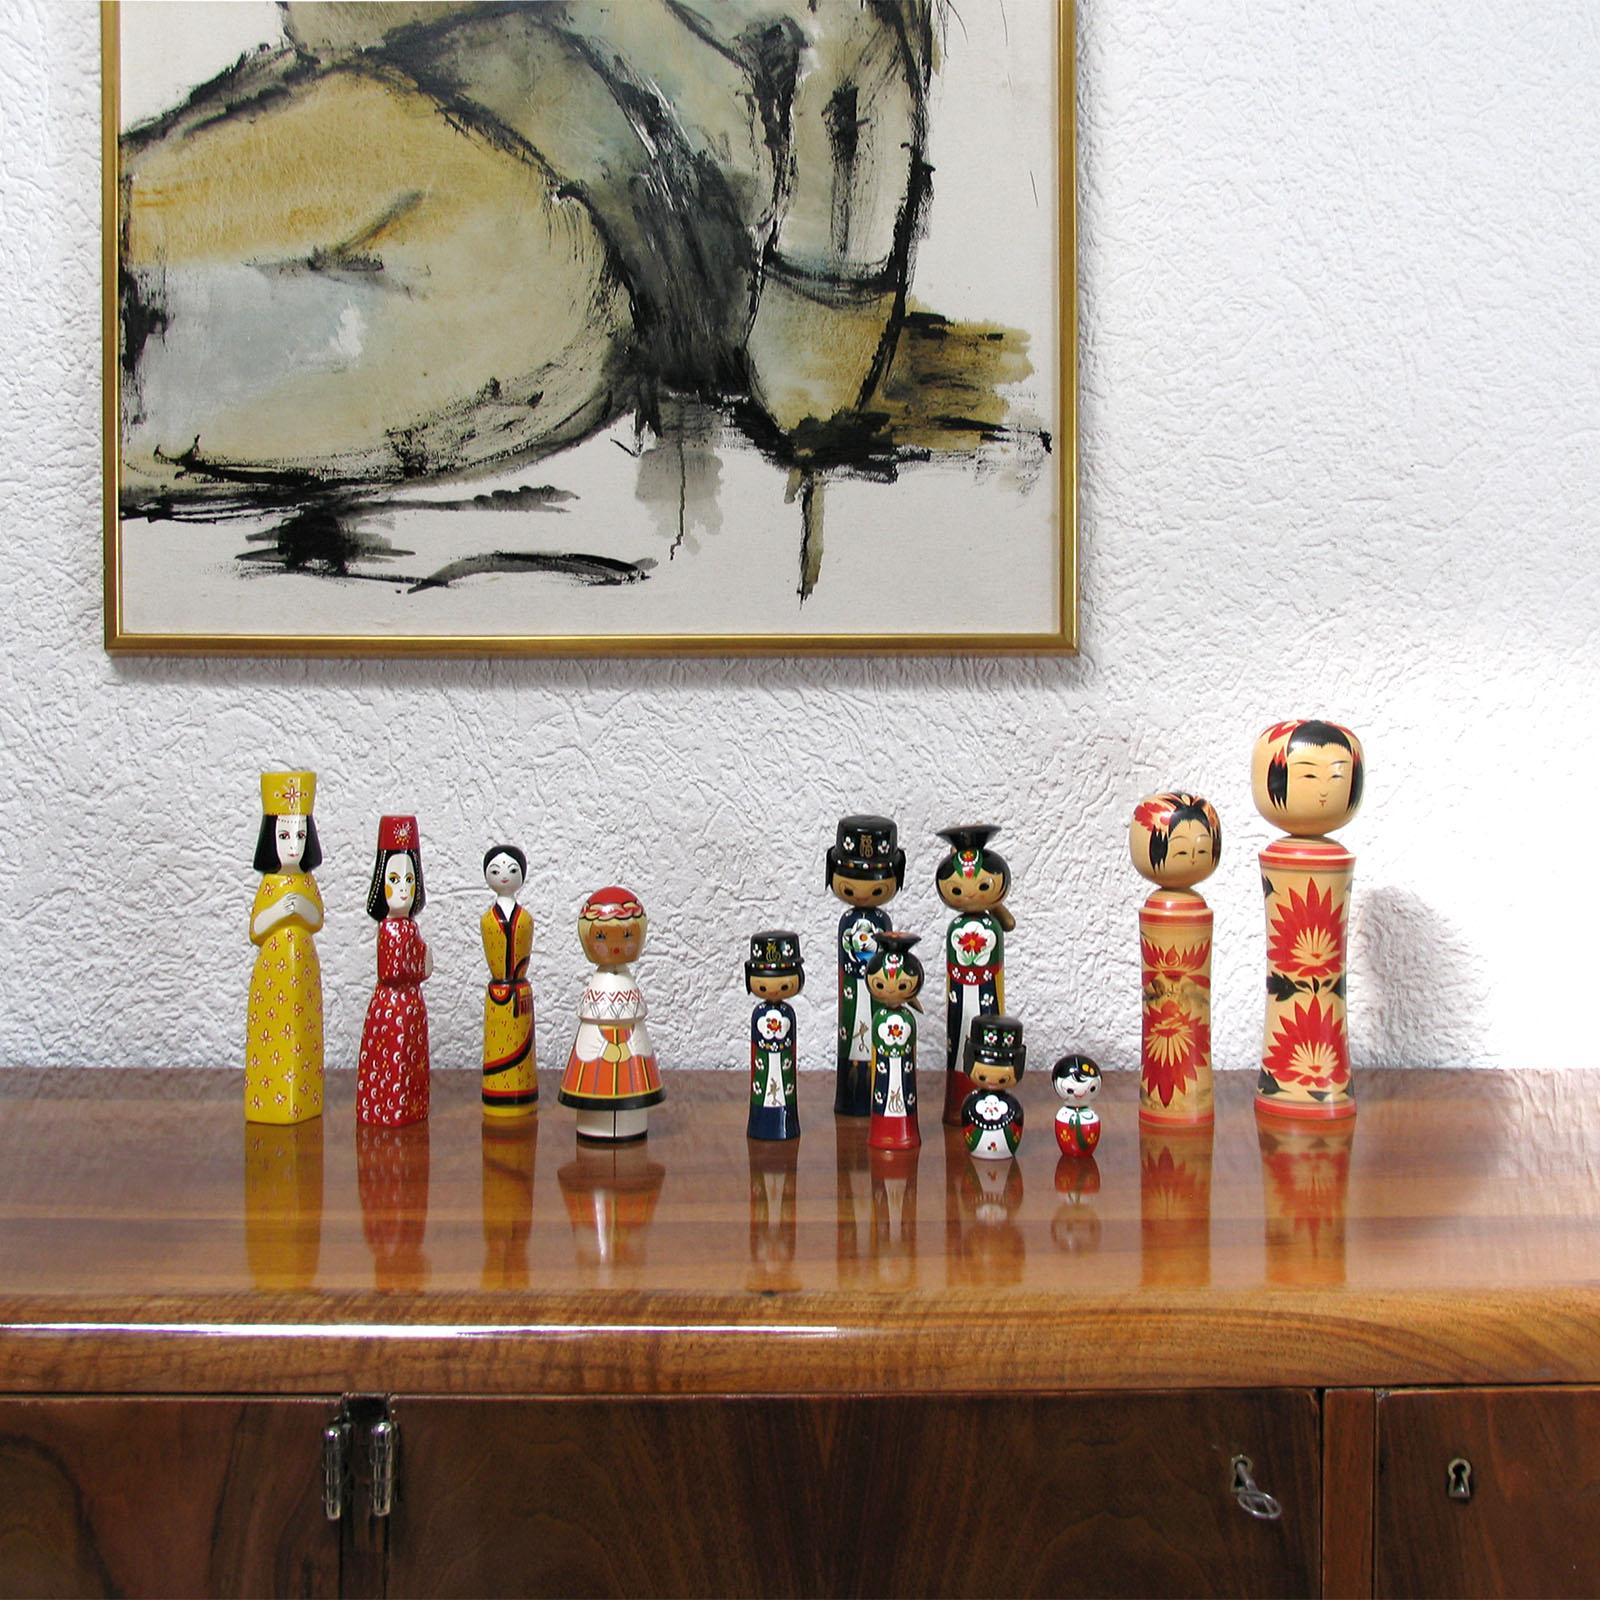 Eine schöne Sammlung von 6 Vintage-Wackelkopf-Hochzeitspuppen aus den 1960er Jahren
Diese handgefertigten, wunderschön verzierten Puppen im Kokeshi-Stil sind Bommelköpfe und sehr alt. Sie stammen aus den 1950er oder 60er Jahren und sind aufwendig